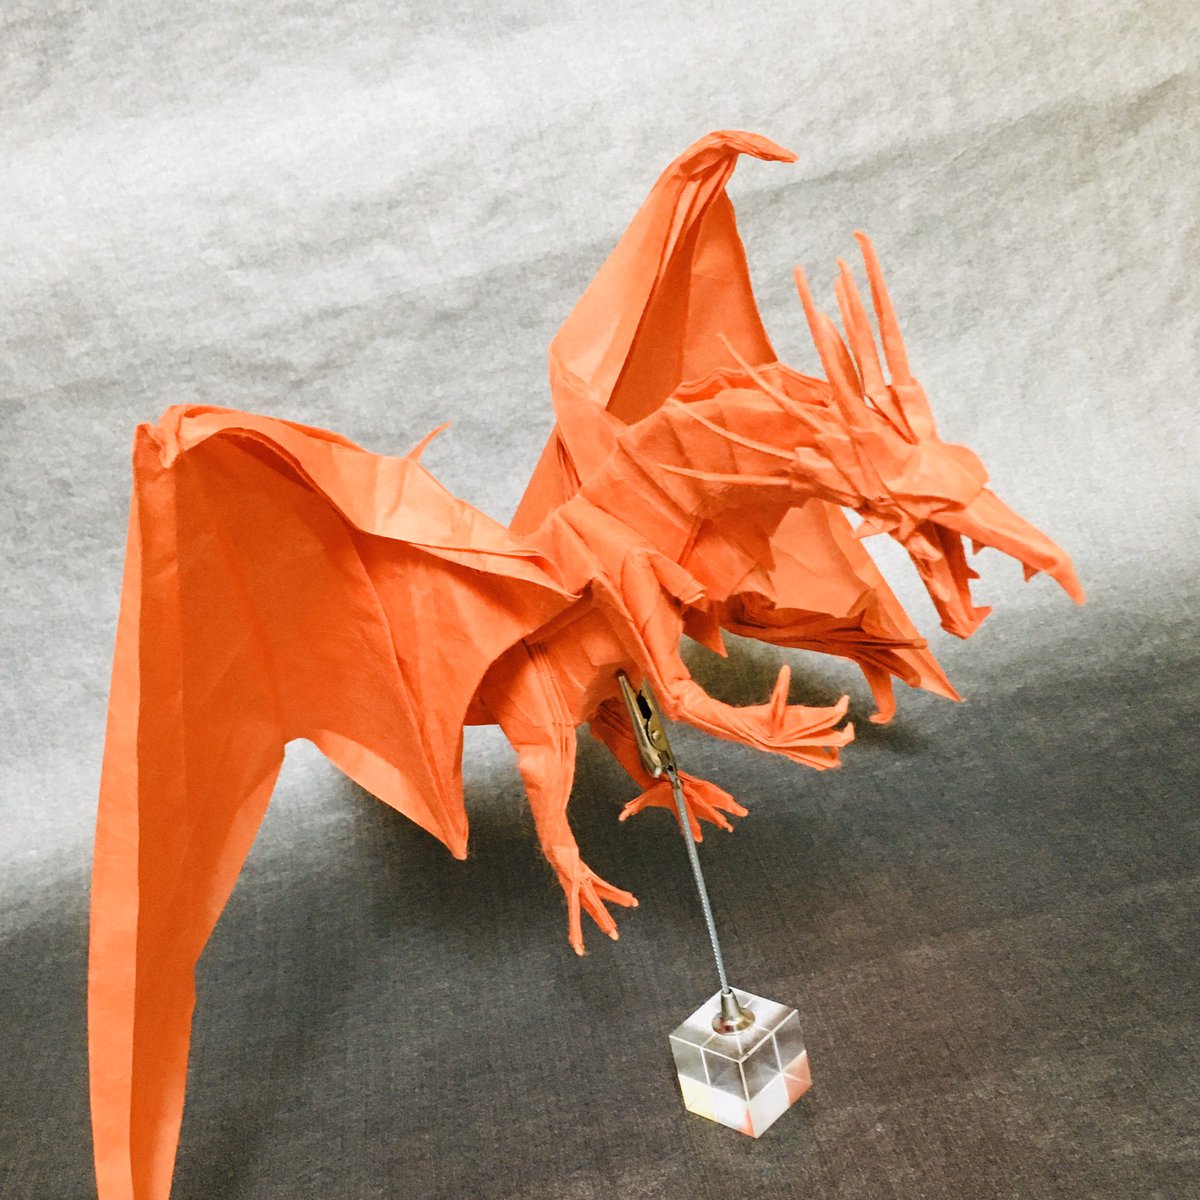 すぎぽよ 神谷哲史さんのエンシェントドラゴンanother A D Another Designed By Satoshi Kamiya 90cm楮和紙より One Sheet Of Square Paper 下半身が納得いかないけど やっぱりエンシェントドラゴンは難しいです ཫ 折り紙作品 Origami